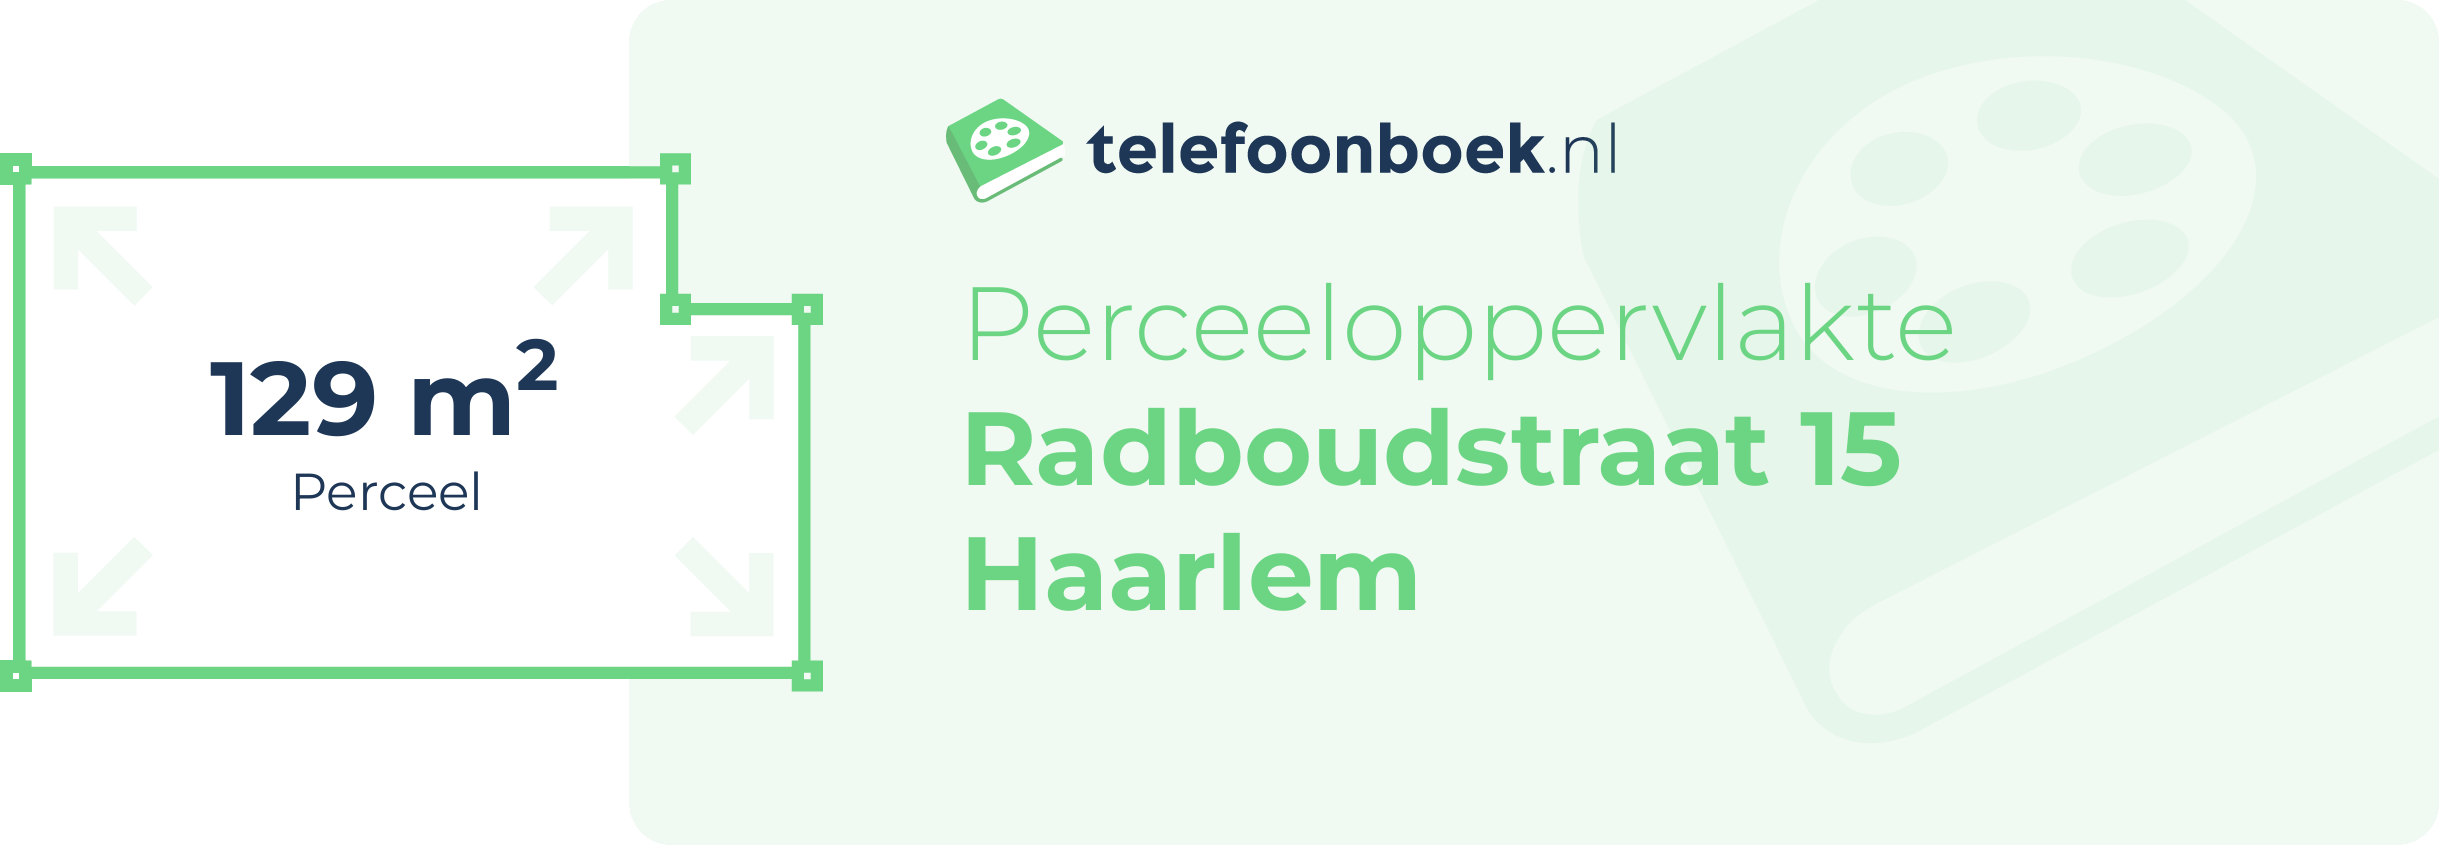 Perceeloppervlakte Radboudstraat 15 Haarlem